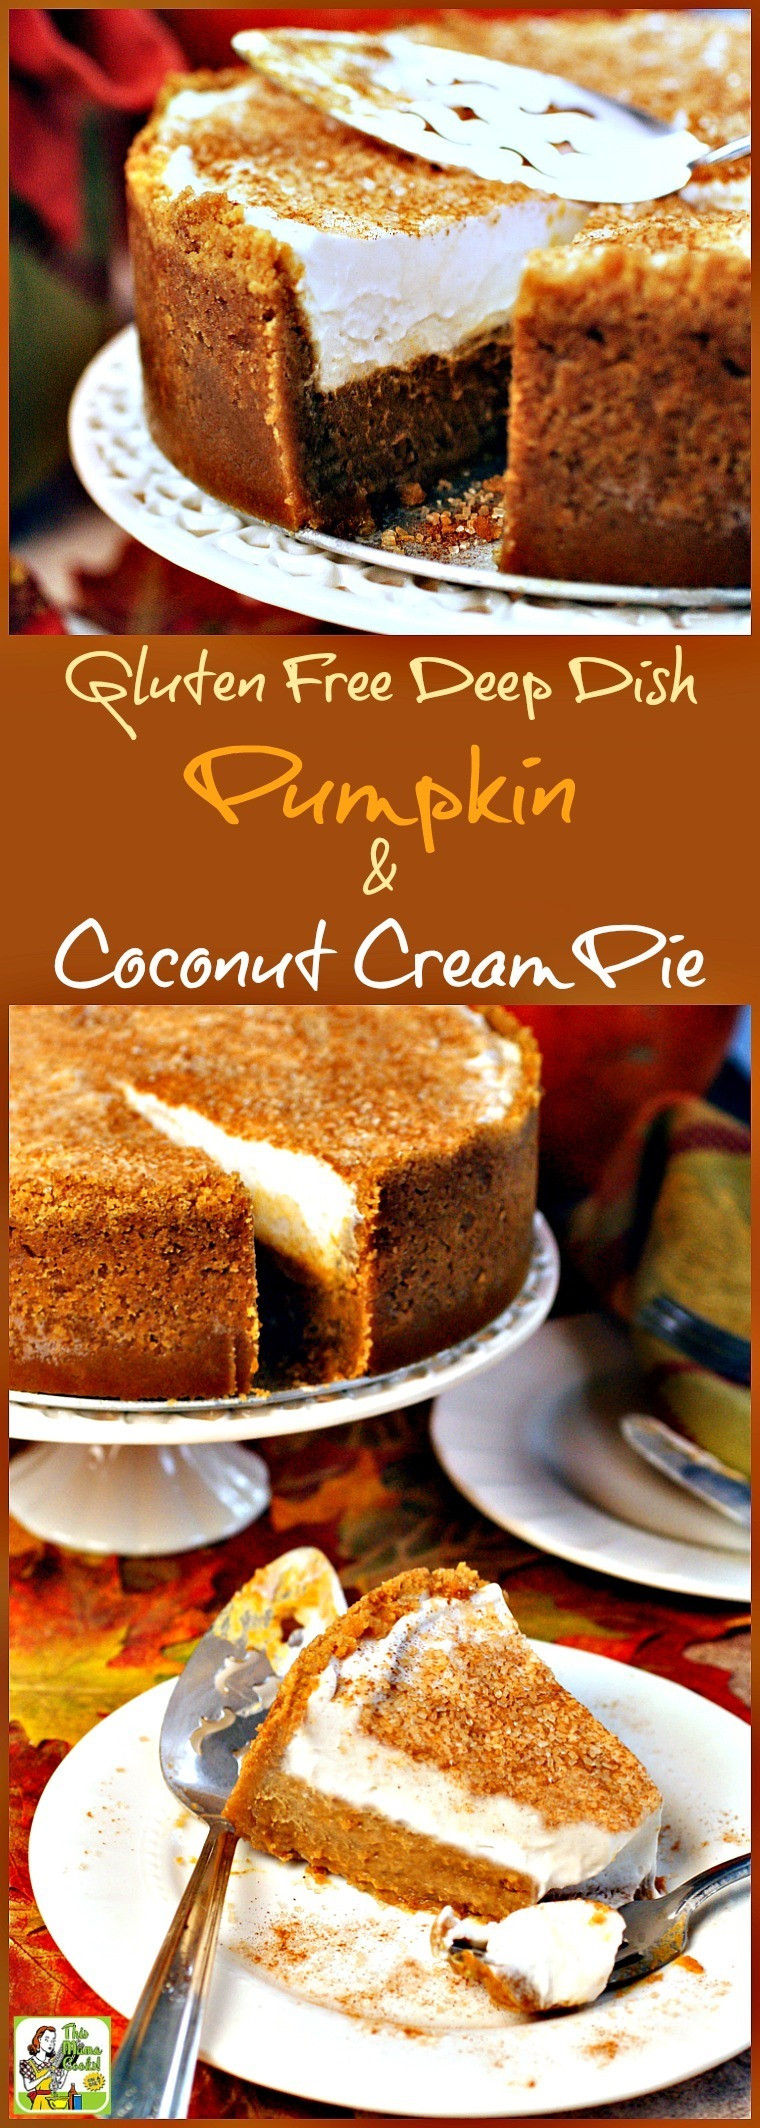 Dairy Free Pumpkin Desserts
 Gluten Free Deep Dish Pumpkin & Coconut Cream Pie